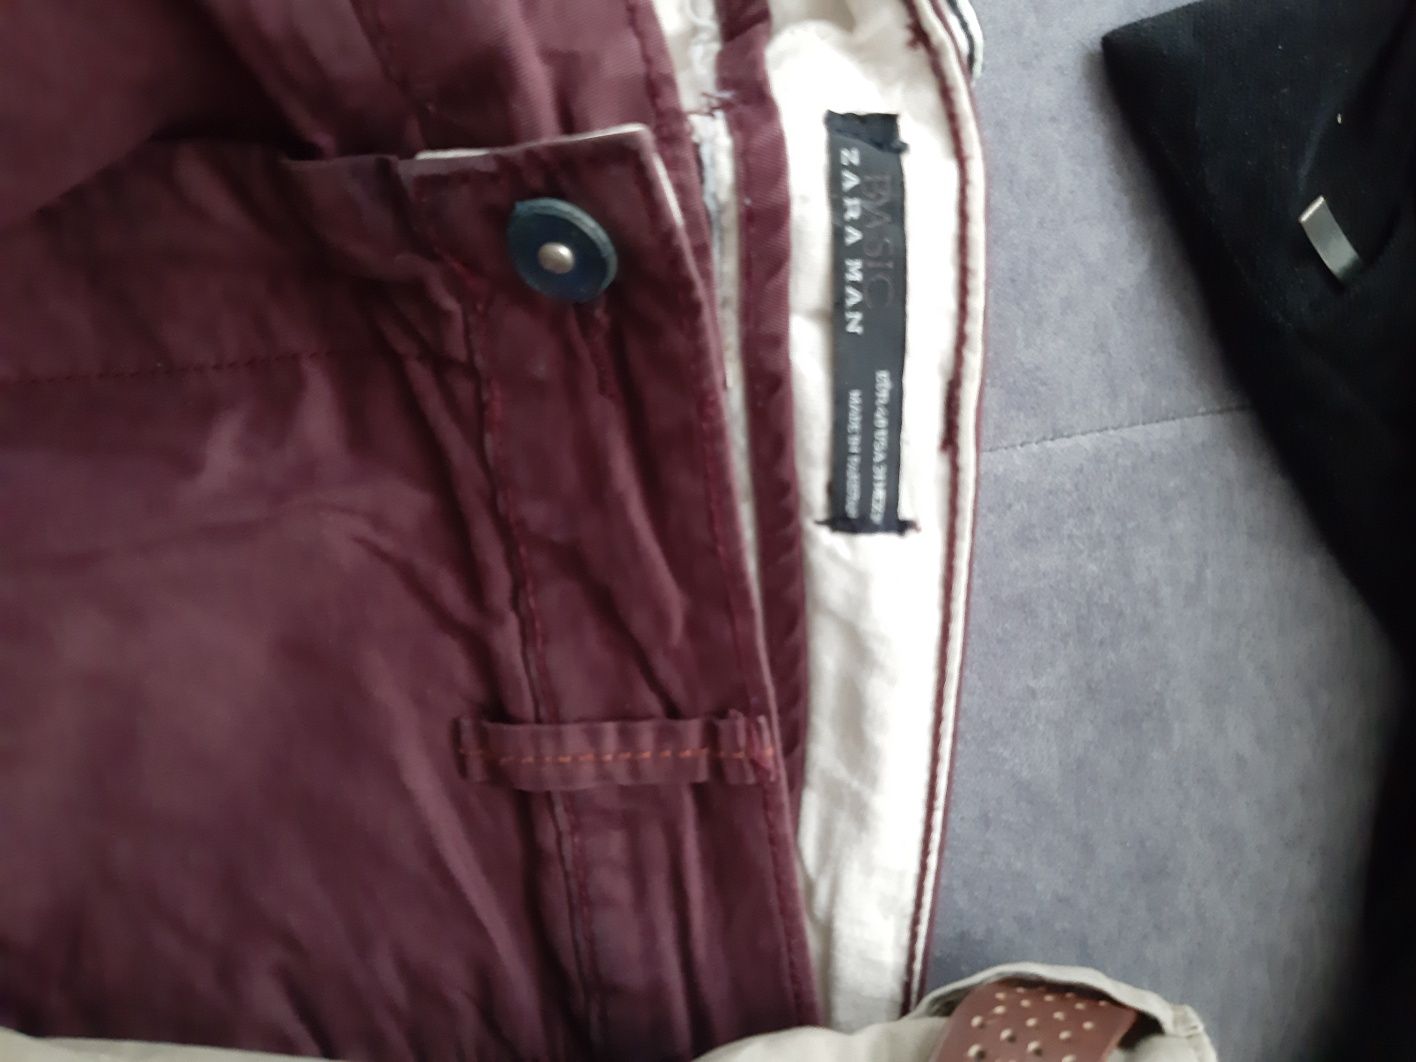 Zara Basic spodnie r.M 3pary